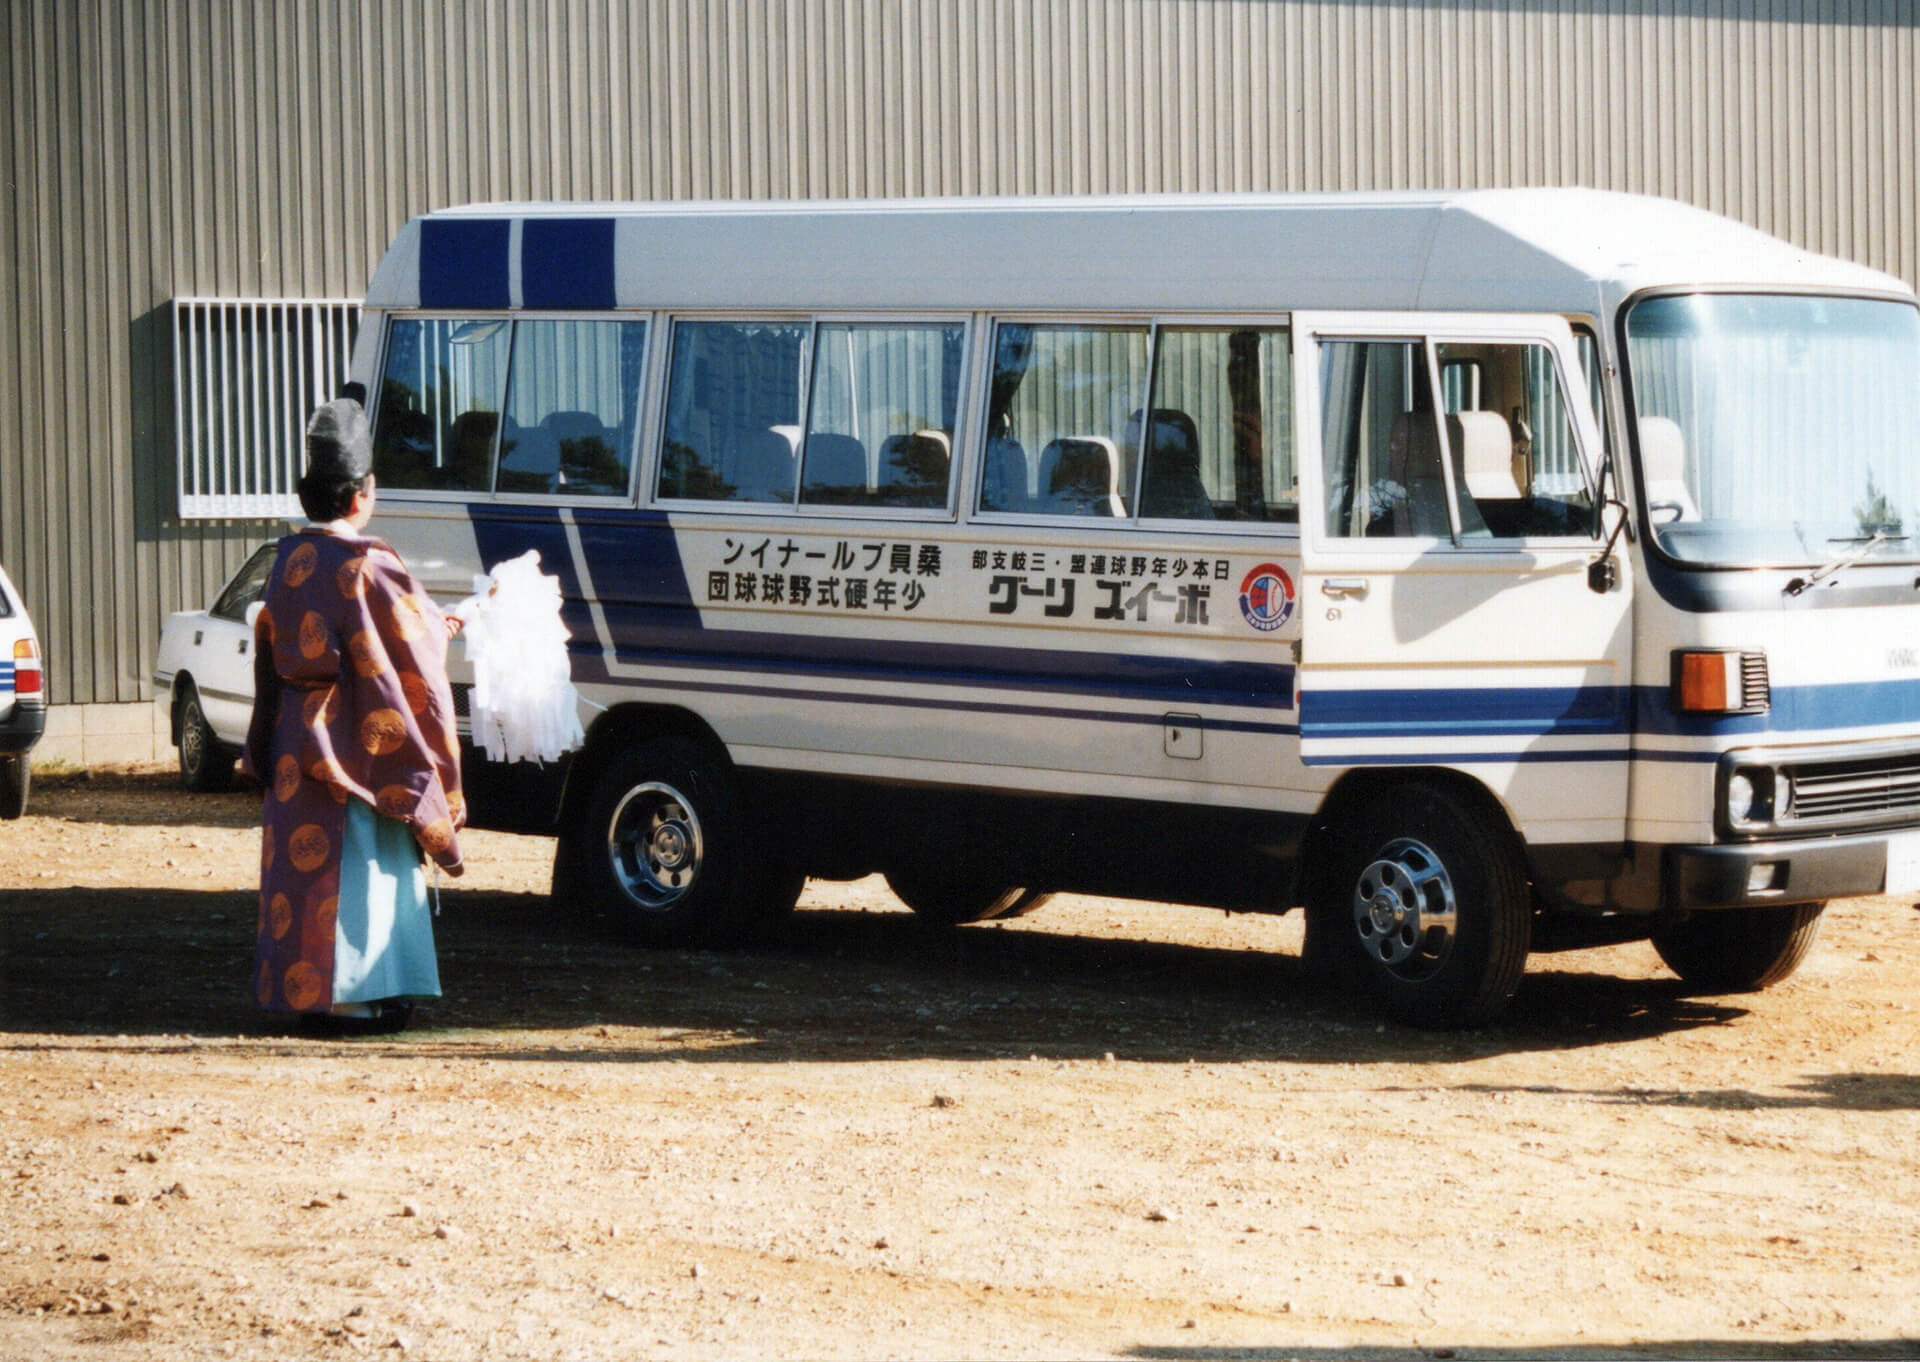 1998年 初代ブルーナインマイクロバス